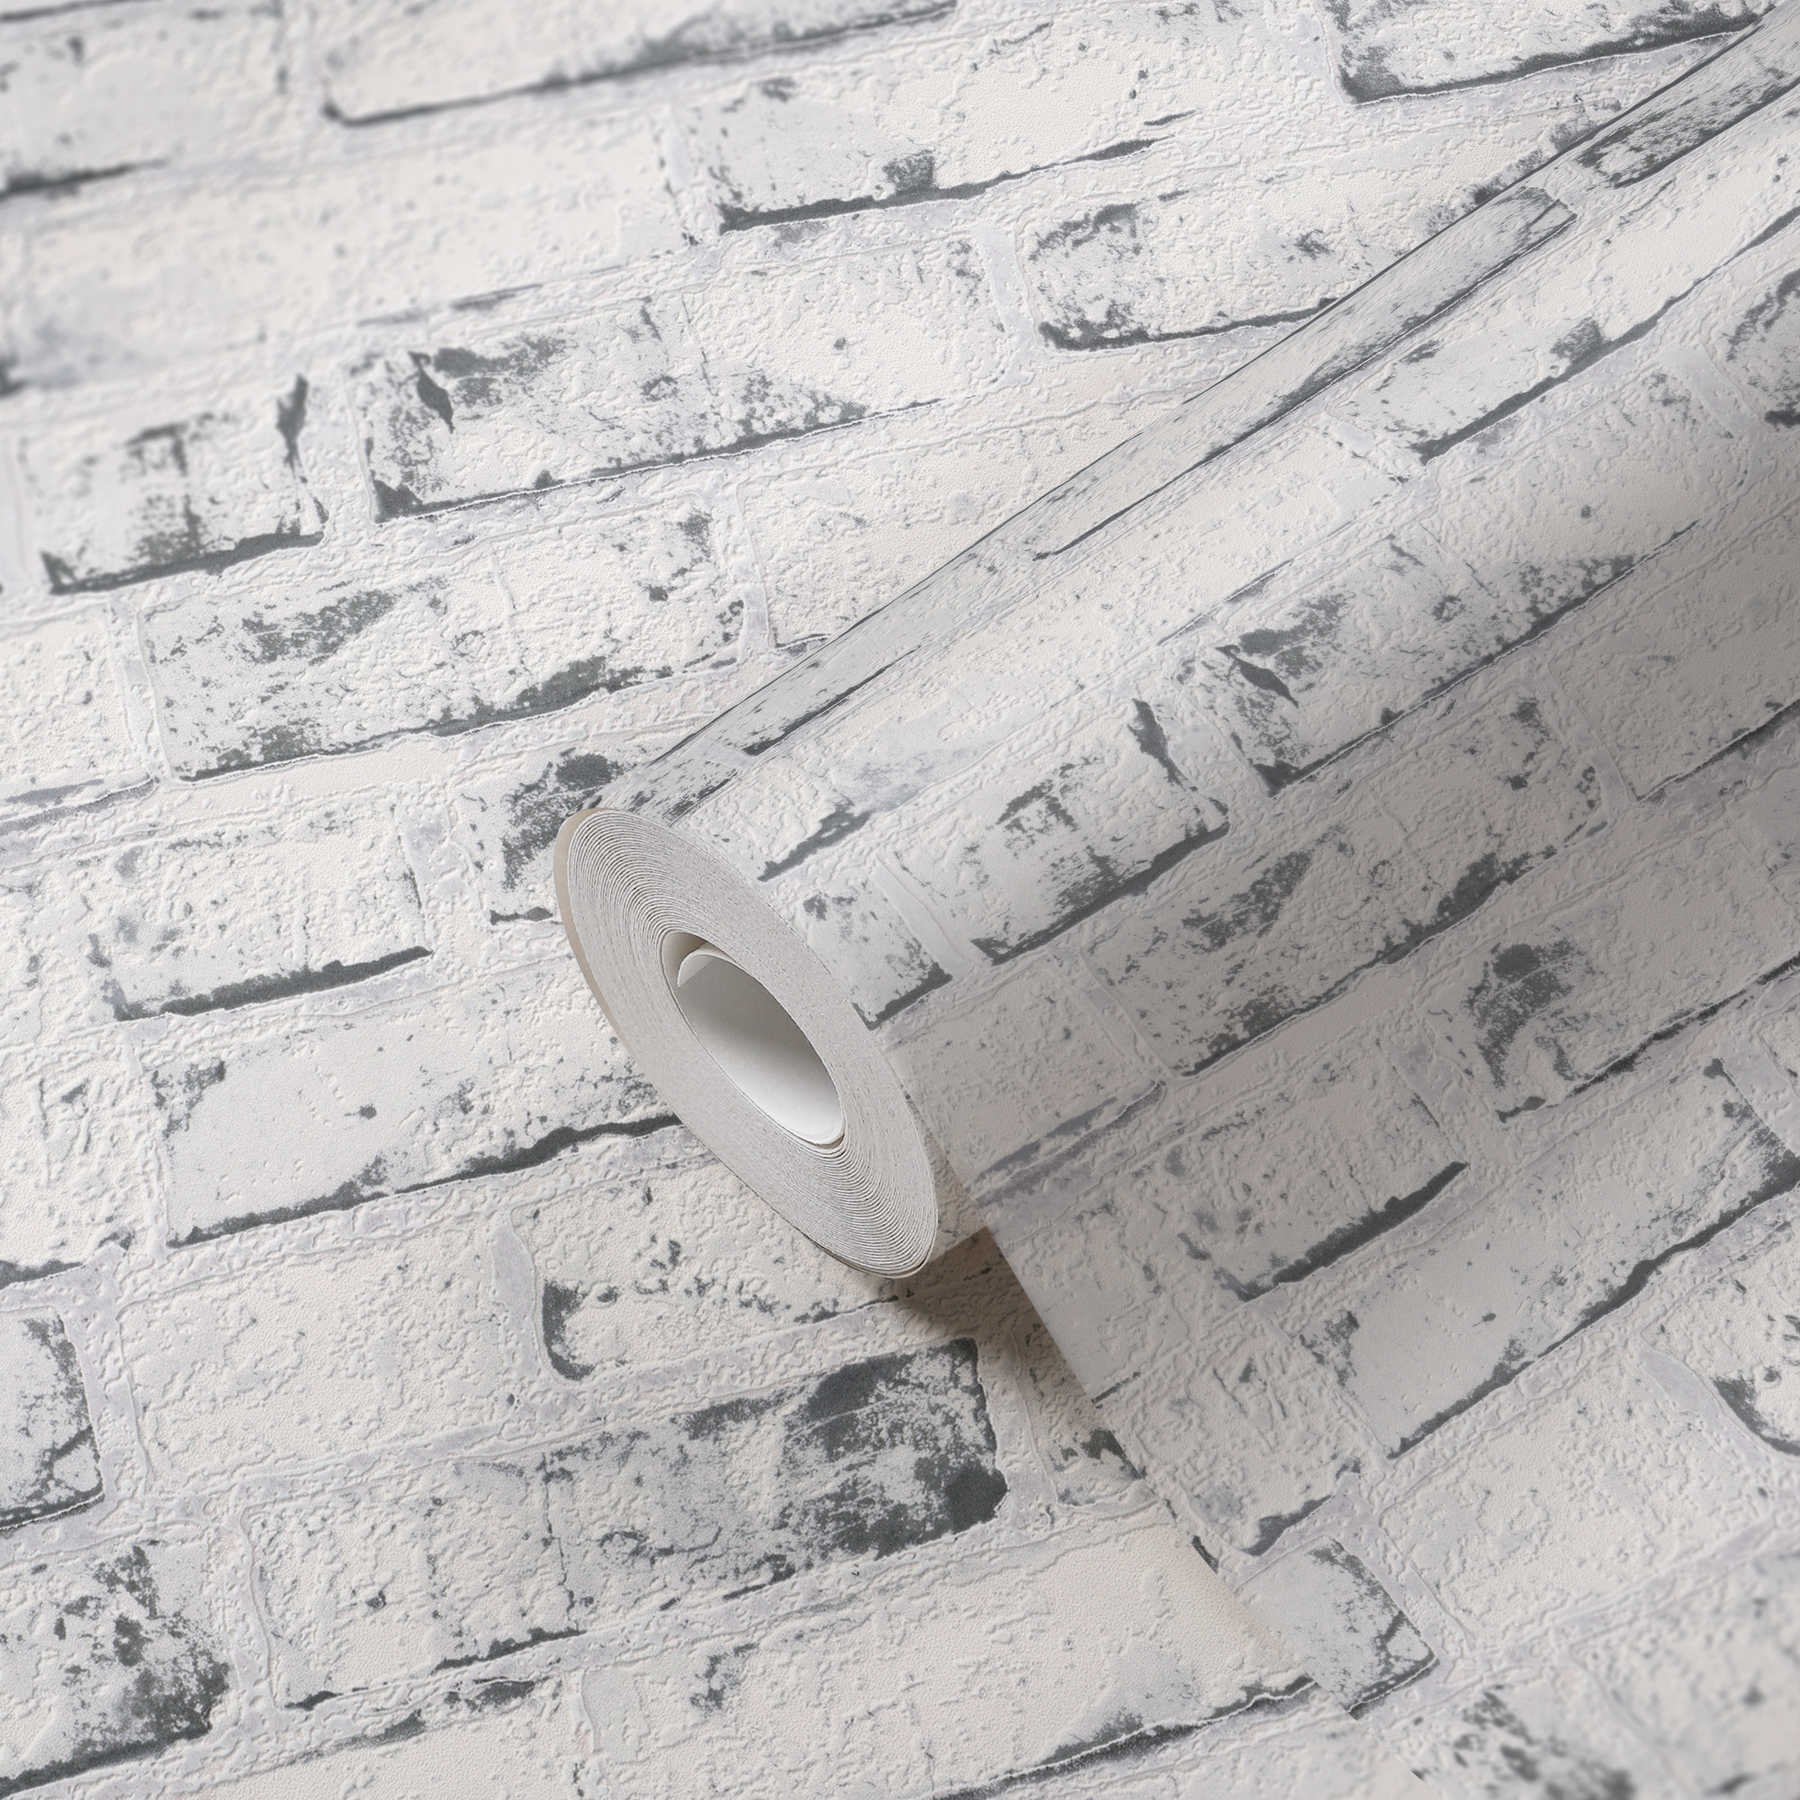             Behang steenlook met baksteenmotief & 3D-effect - grijs, beige
        